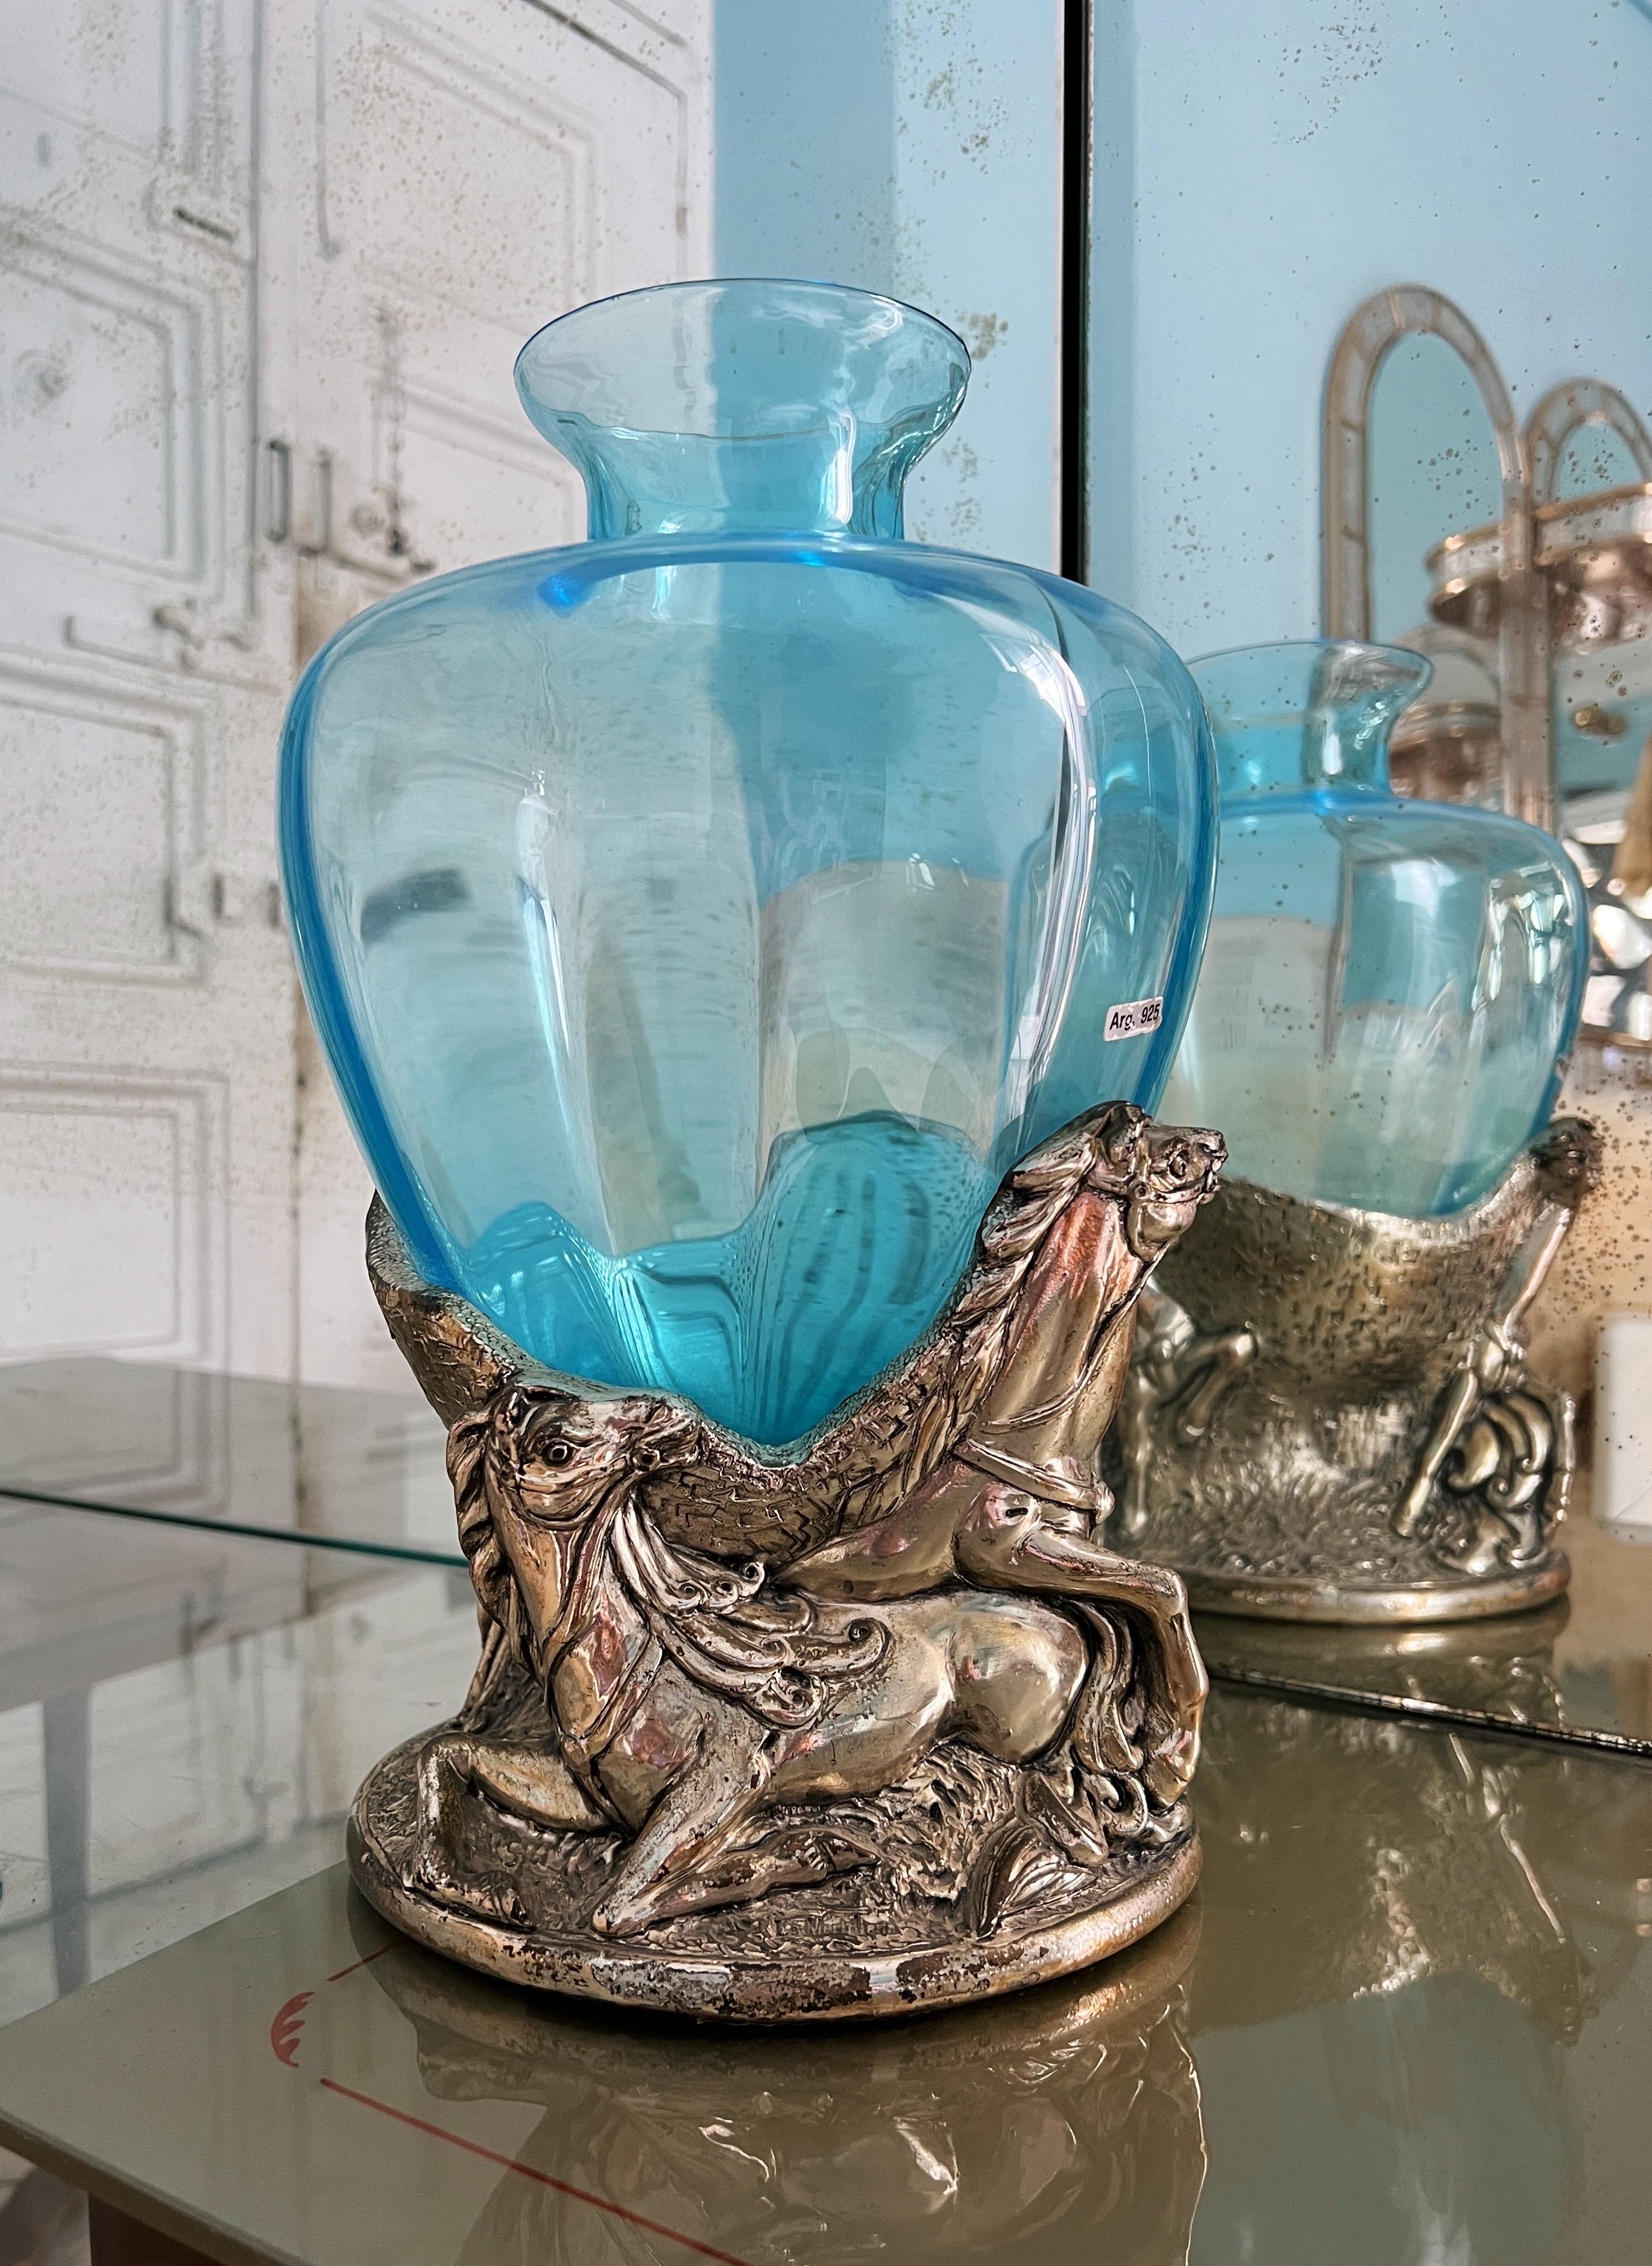 Ce vase exquis de Murano du milieu du siècle, orné d'une teinte bleu ciel saisissante, orne une élégante sculpture représentant des chevaux. Le vase est vraisemblablement plaqué en argent 925, bien que les estampilles apposées sur le vase soient